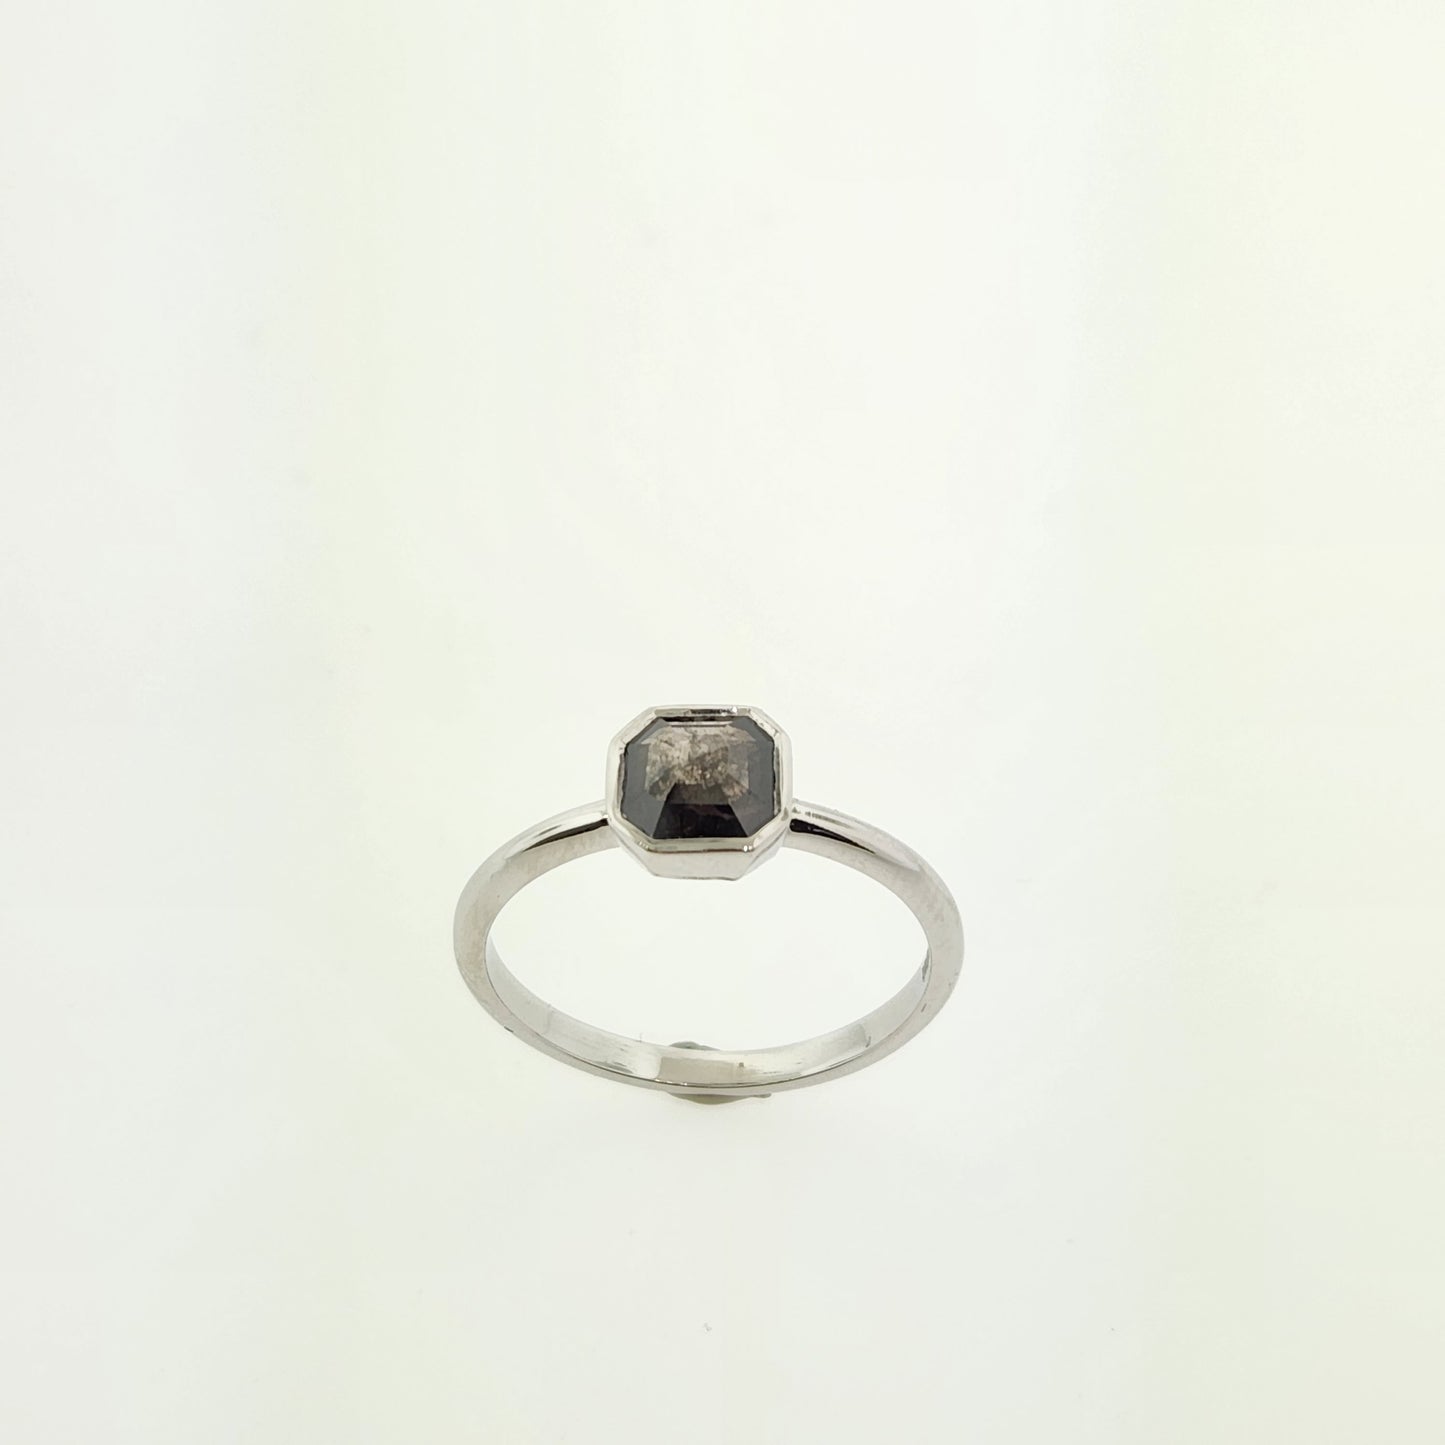 Salt & Pepper Hexagon Diamond Ring Setting in 14 k White Gold.